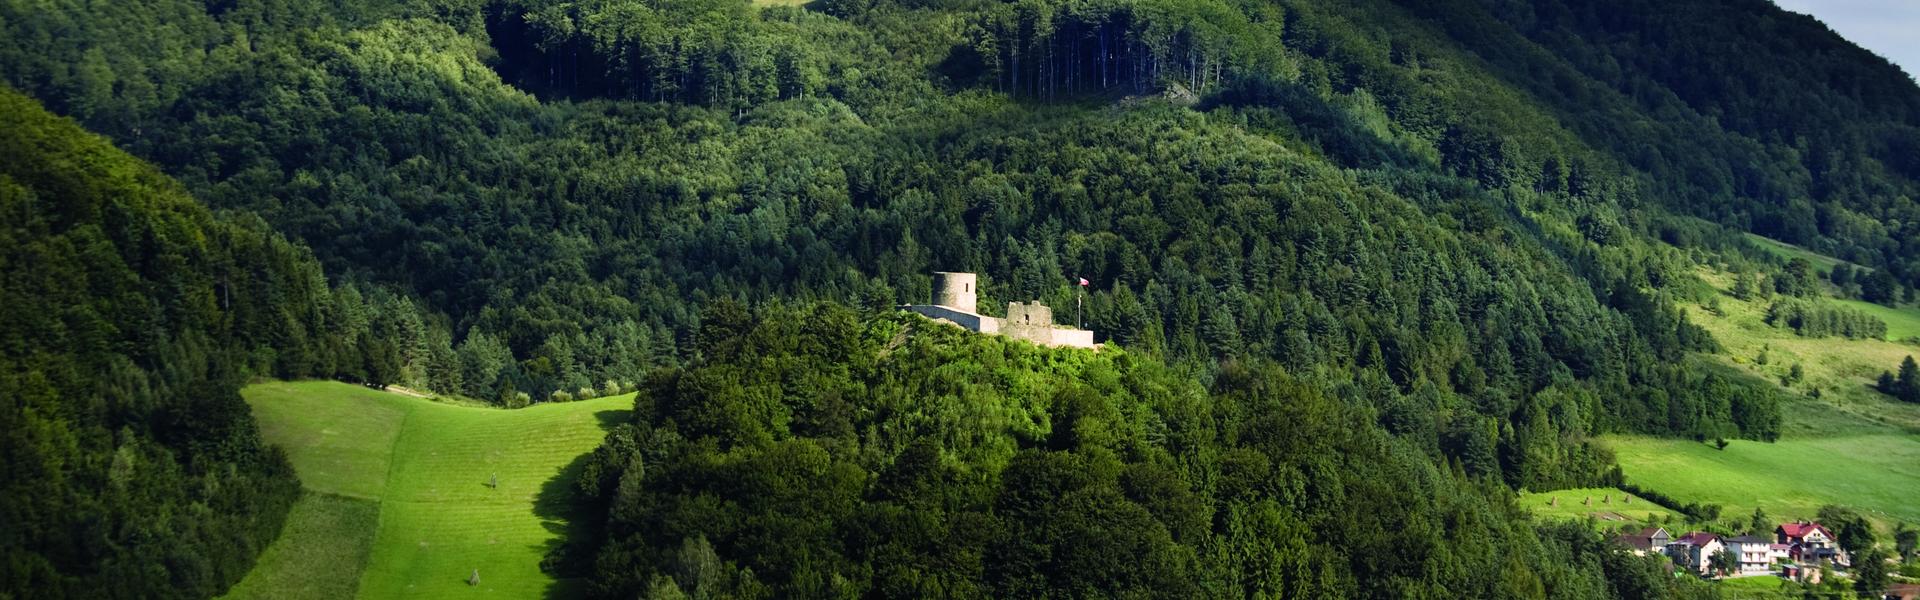 Ruiny zamku w Rytrze w oddali. Wokół lasy.